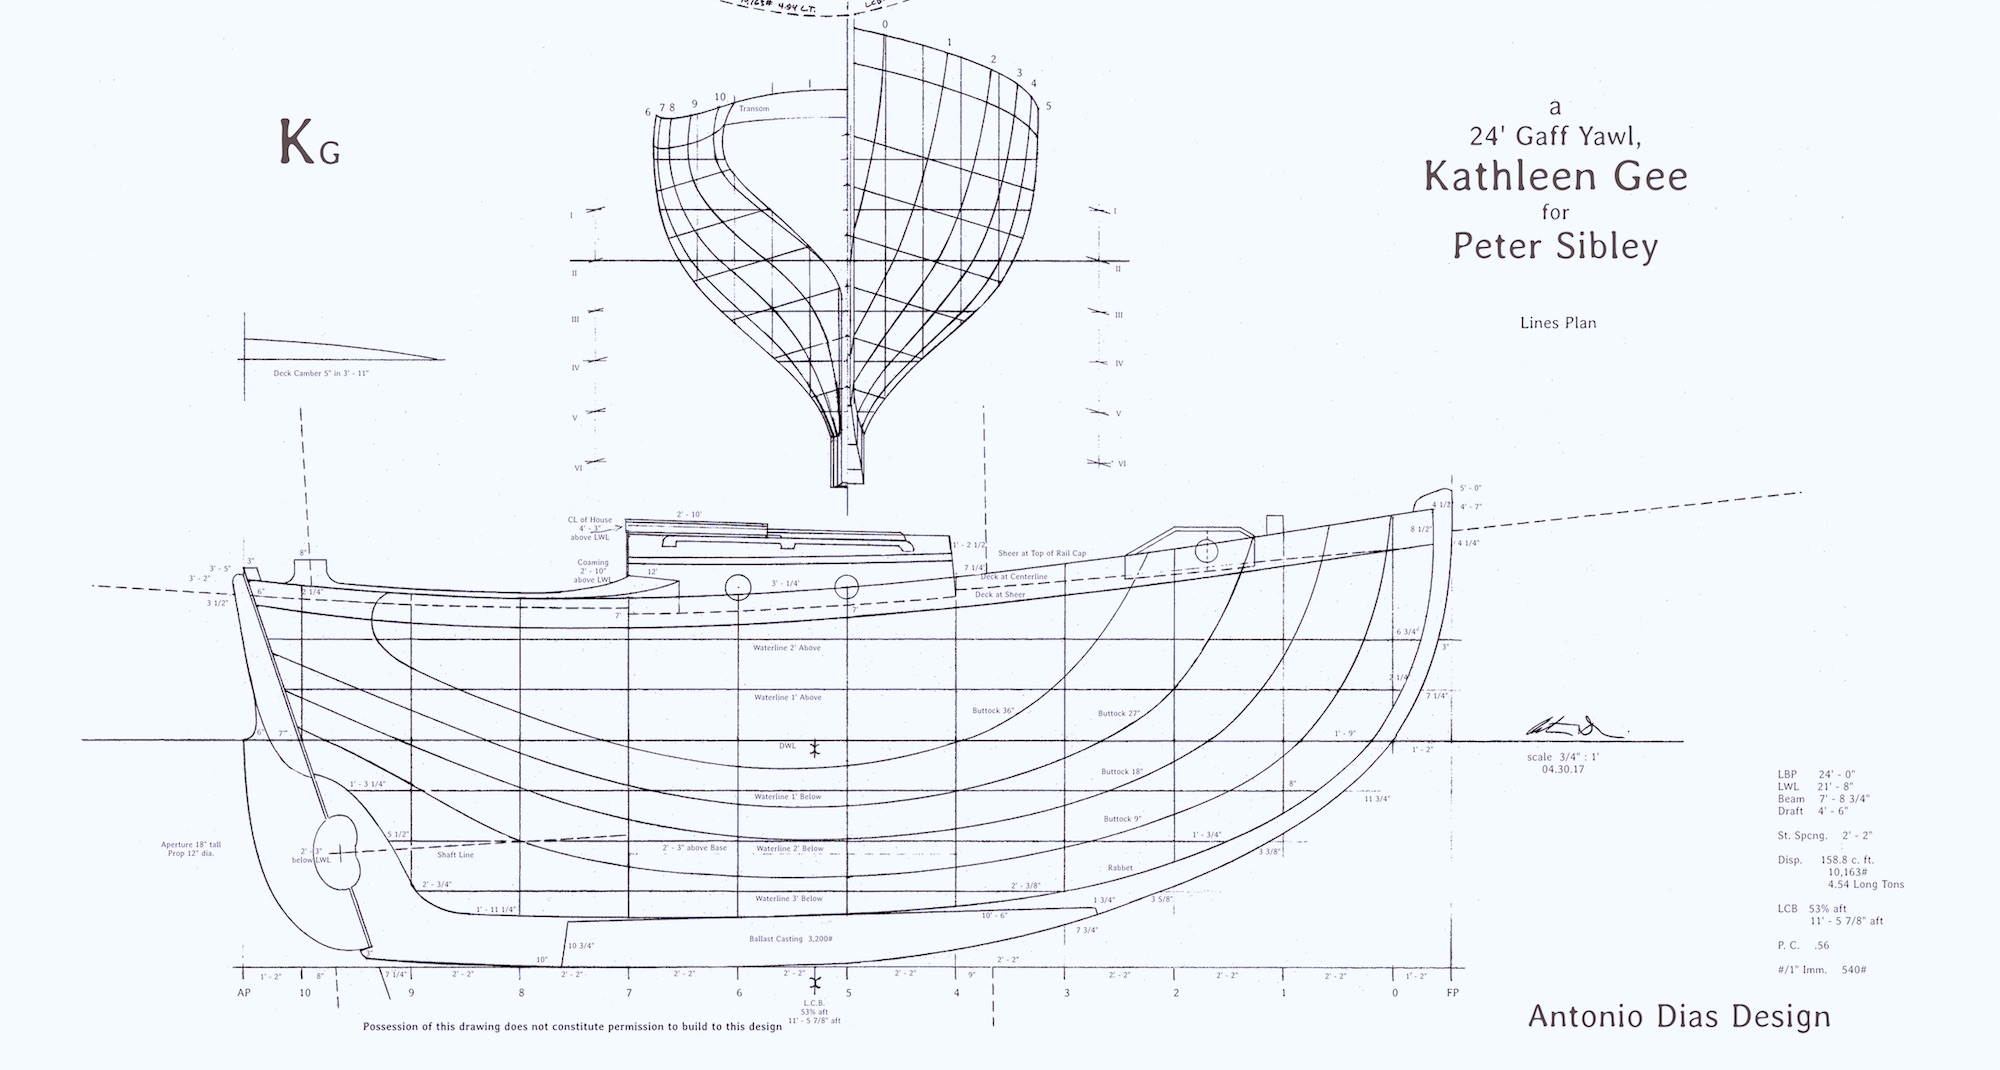 Lines plan. Модель парусной яхты чертежи. Lines Plan на судне. Яхты Дадли Дикса проекты чертежи.